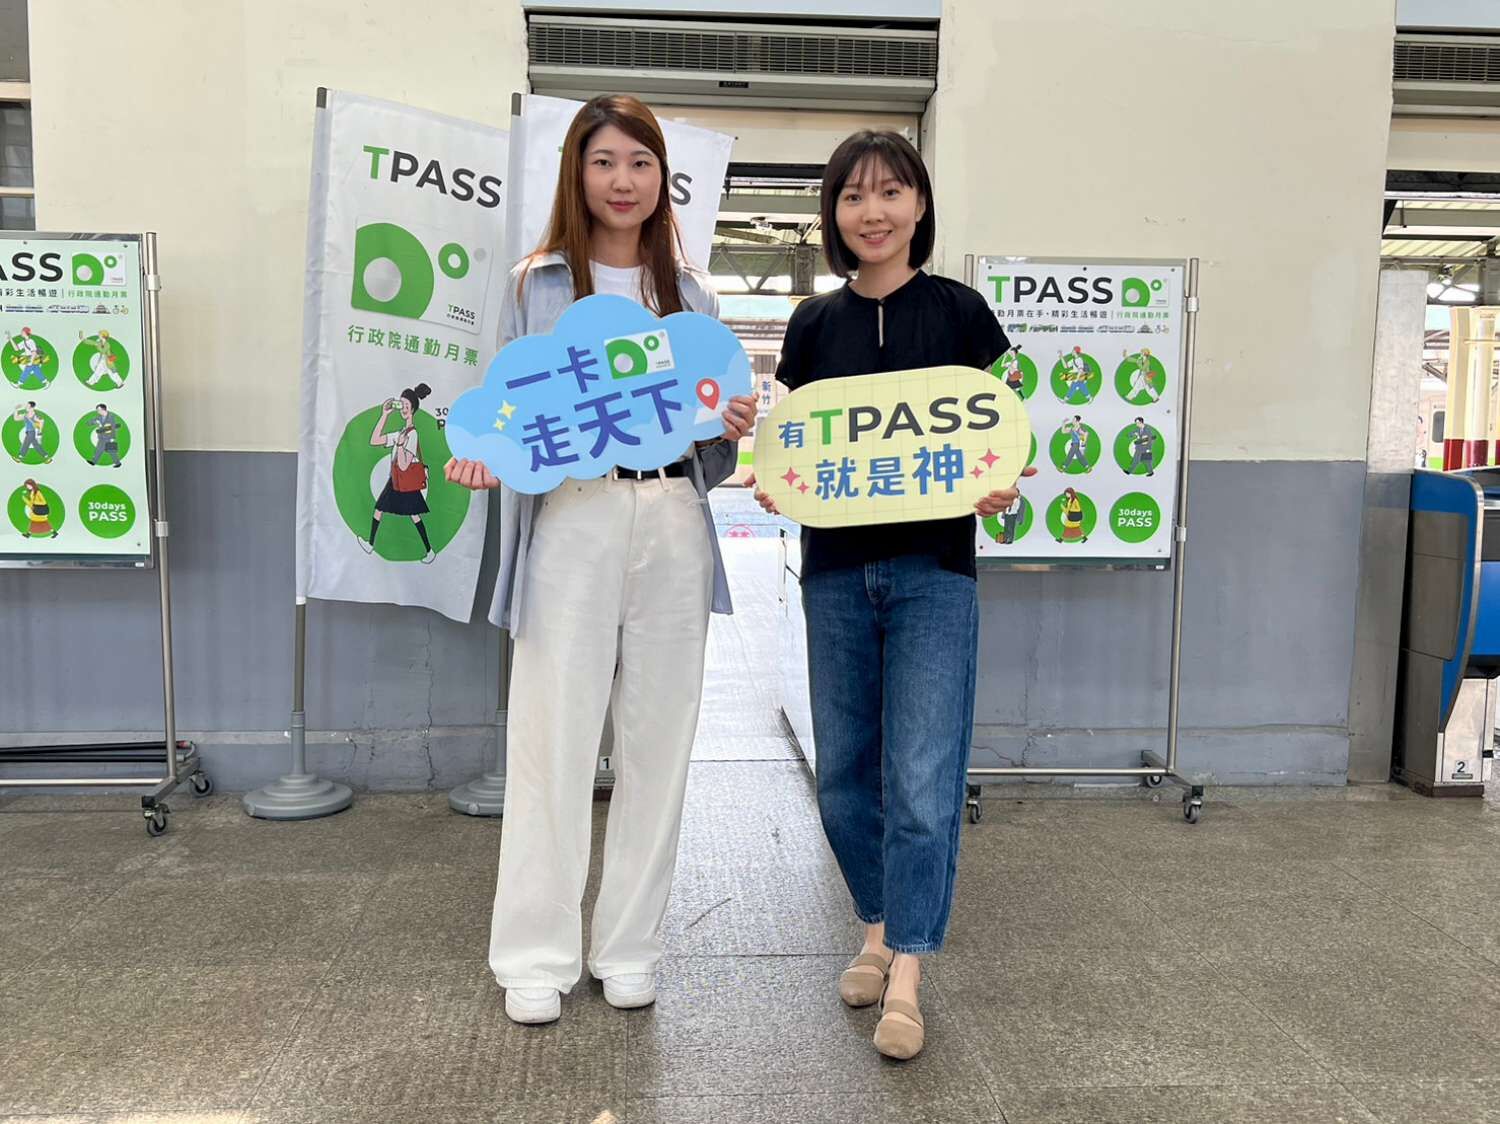 新竹火車站TPASS通勤定期票進站口